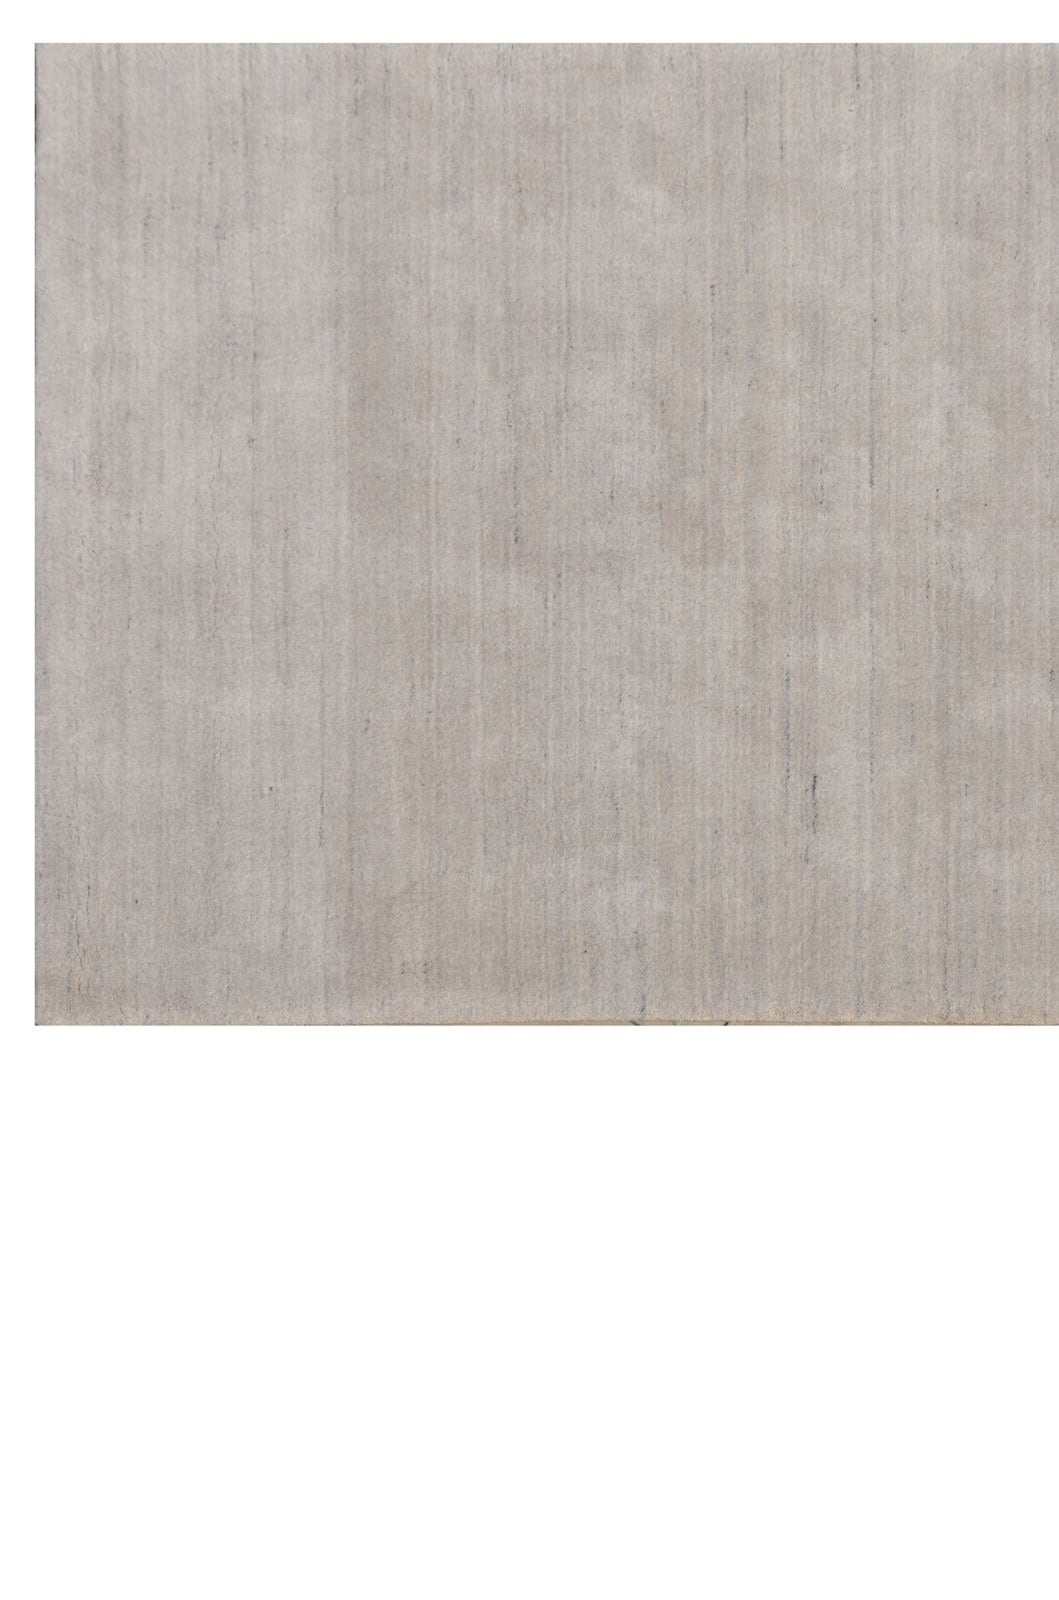 Berber-Teppich ATLAS 70 x 140 cm grau meliert 